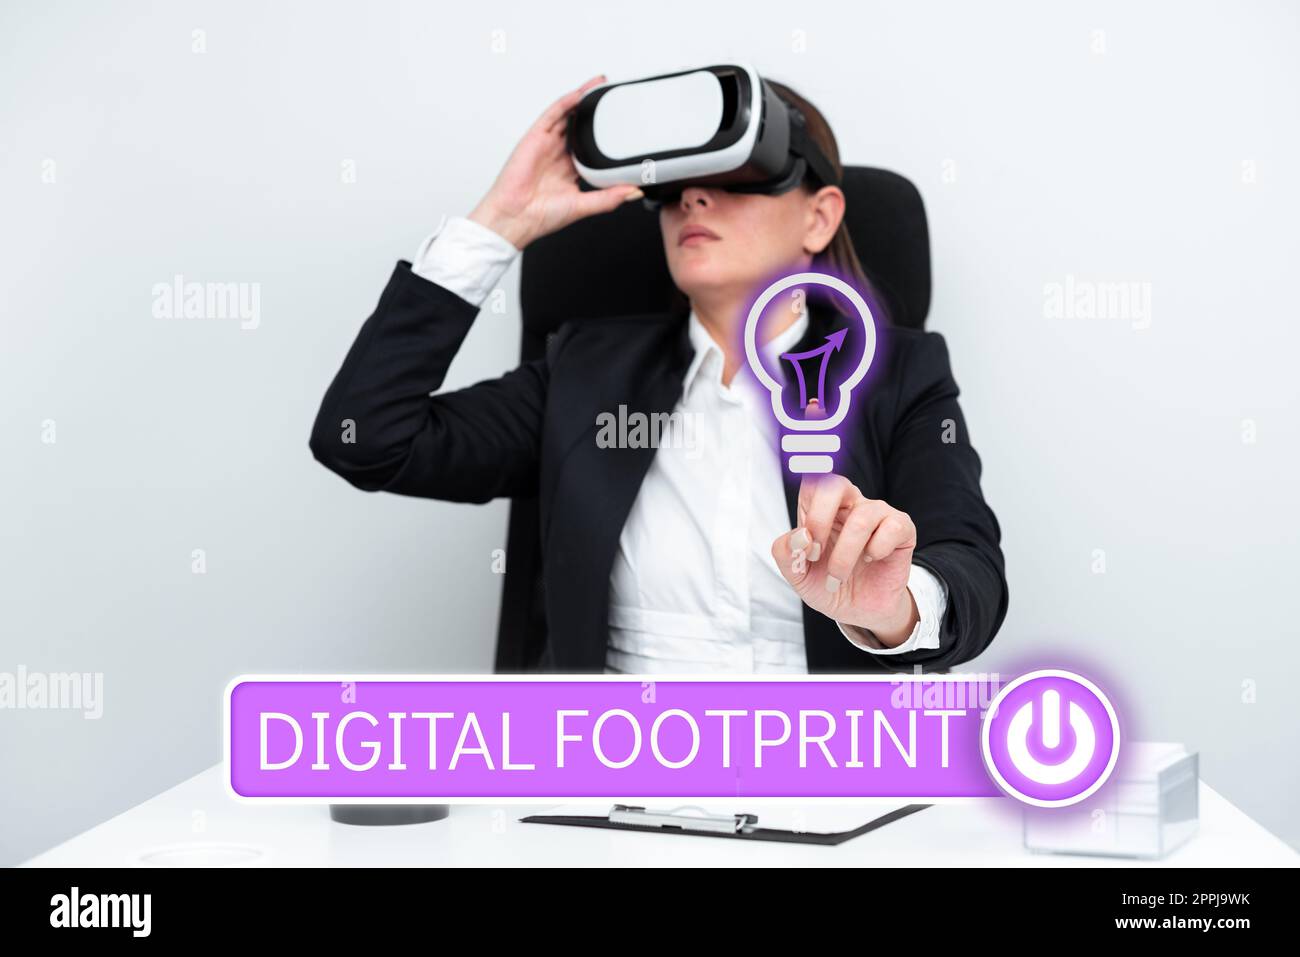 Scritta a mano Footprint digitale. Internet Concept utilizza la tecnologia digitale per gestire il processo di produzione Foto Stock